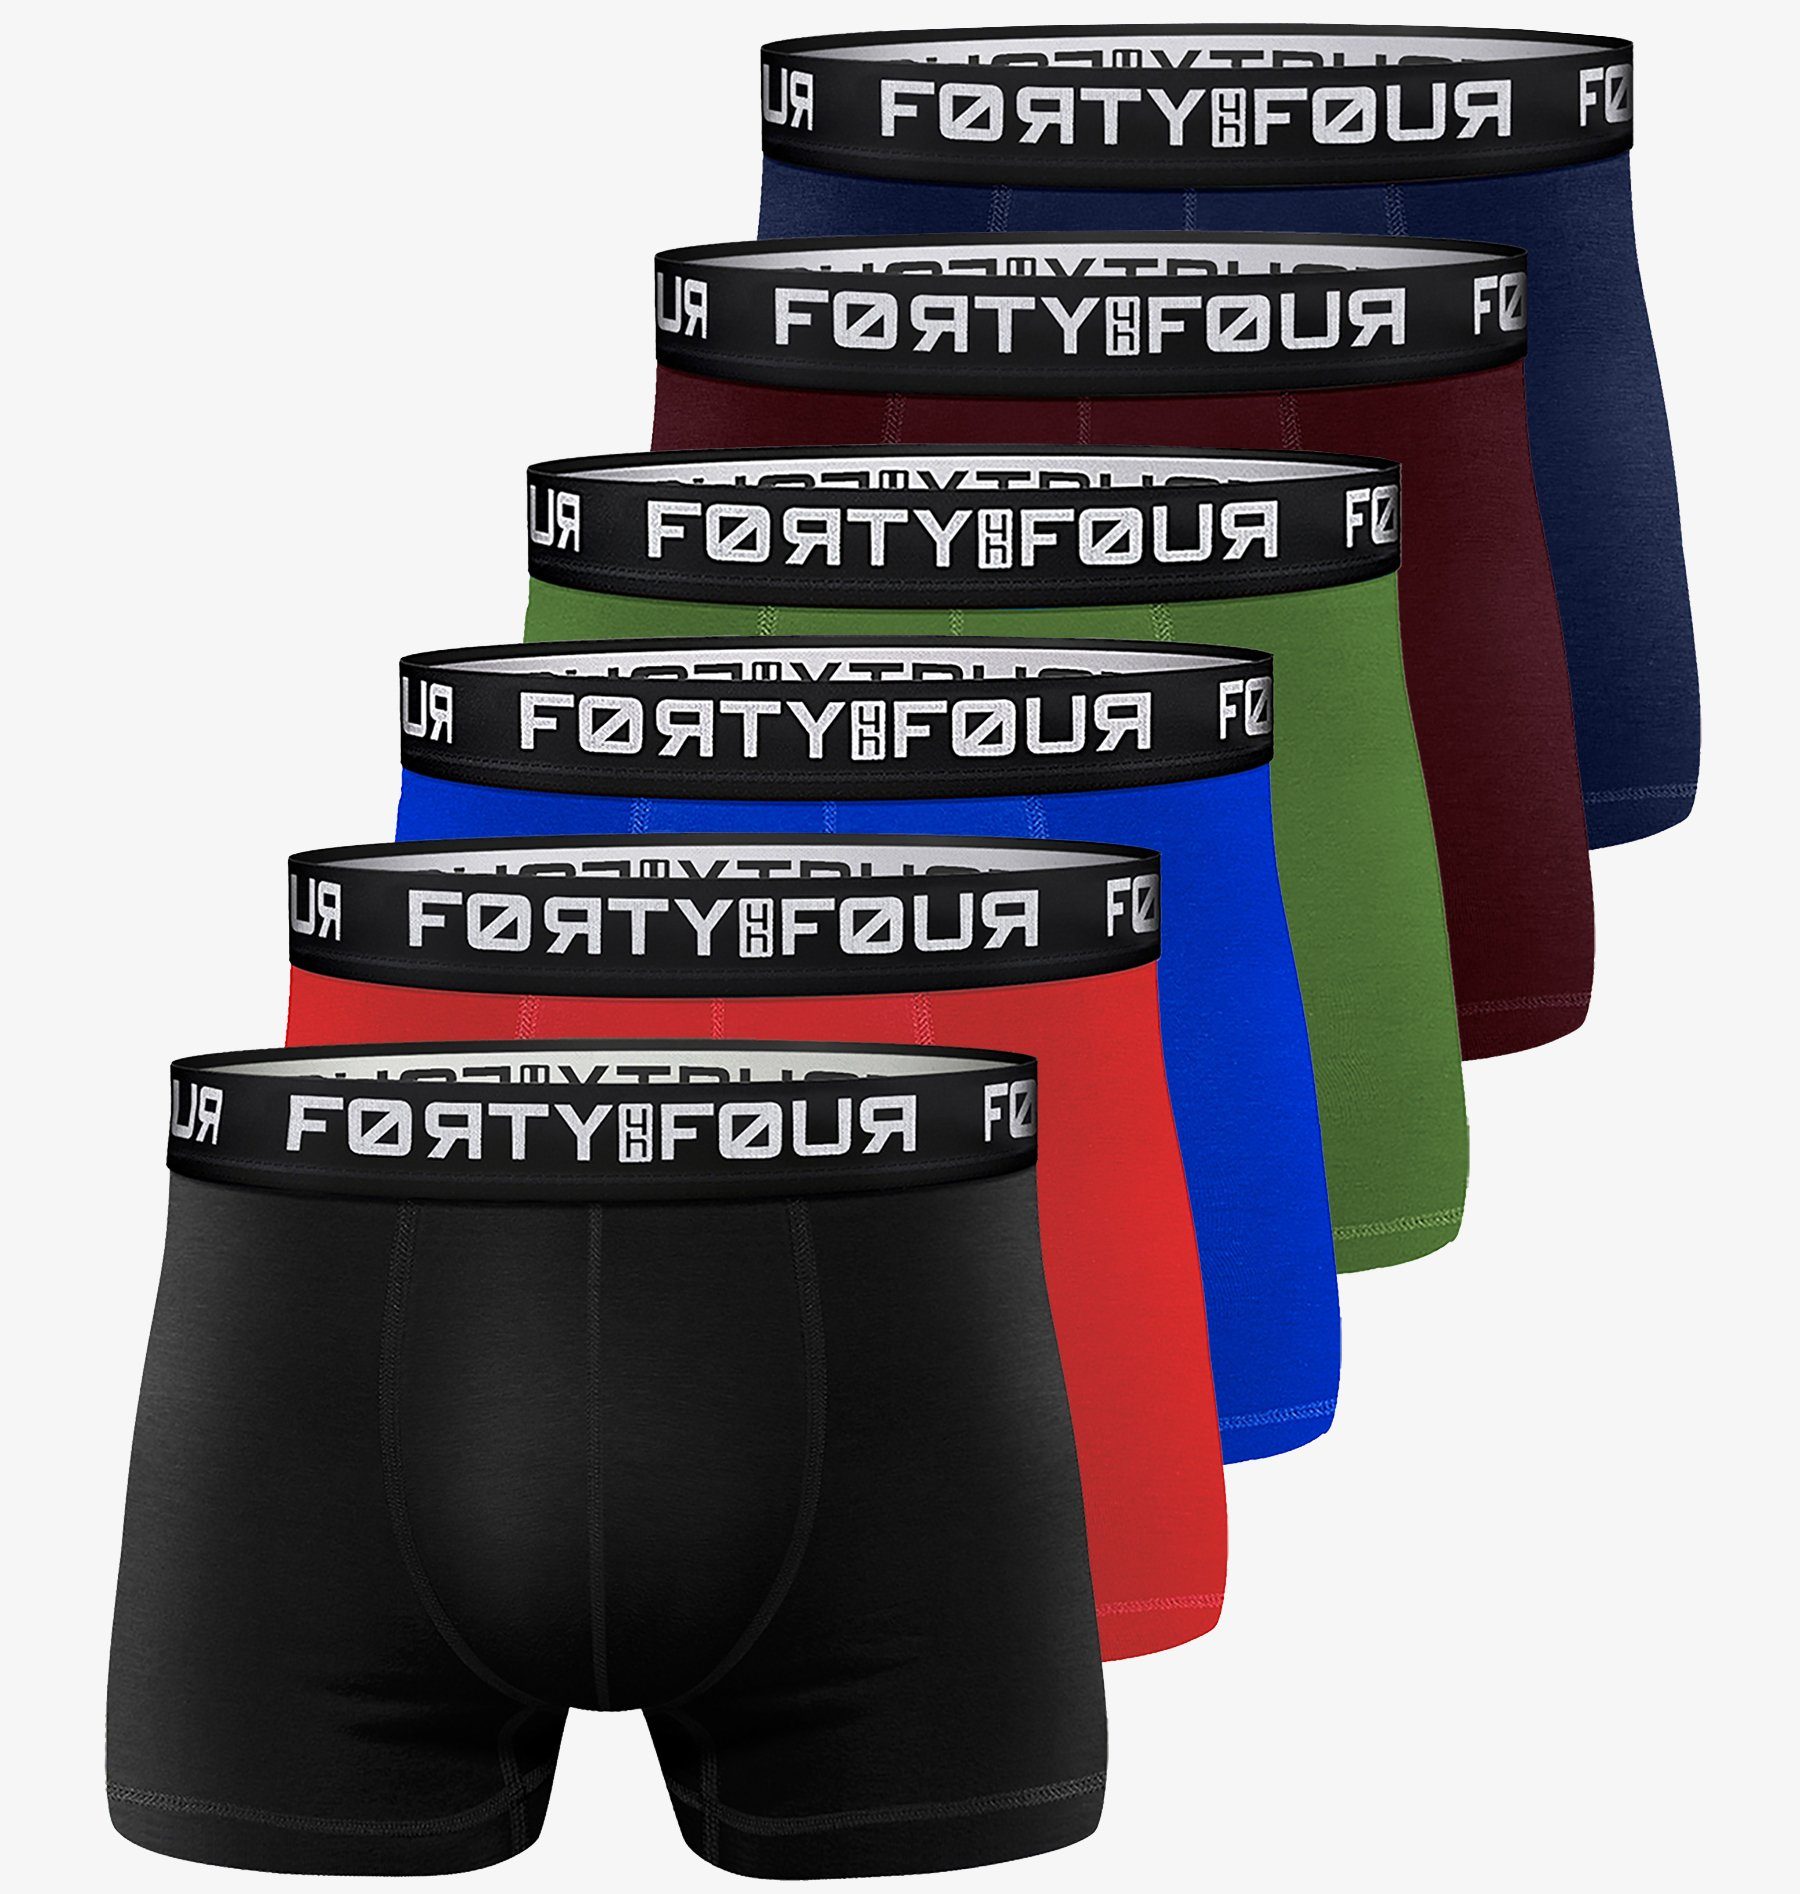 FortyFour Boxershorts Herren Männer Unterhosen Baumwolle Premium Qualität perfekte Passform (Vorteilspack, 6er Pack) S - 7XL 706d-mehrfarbig